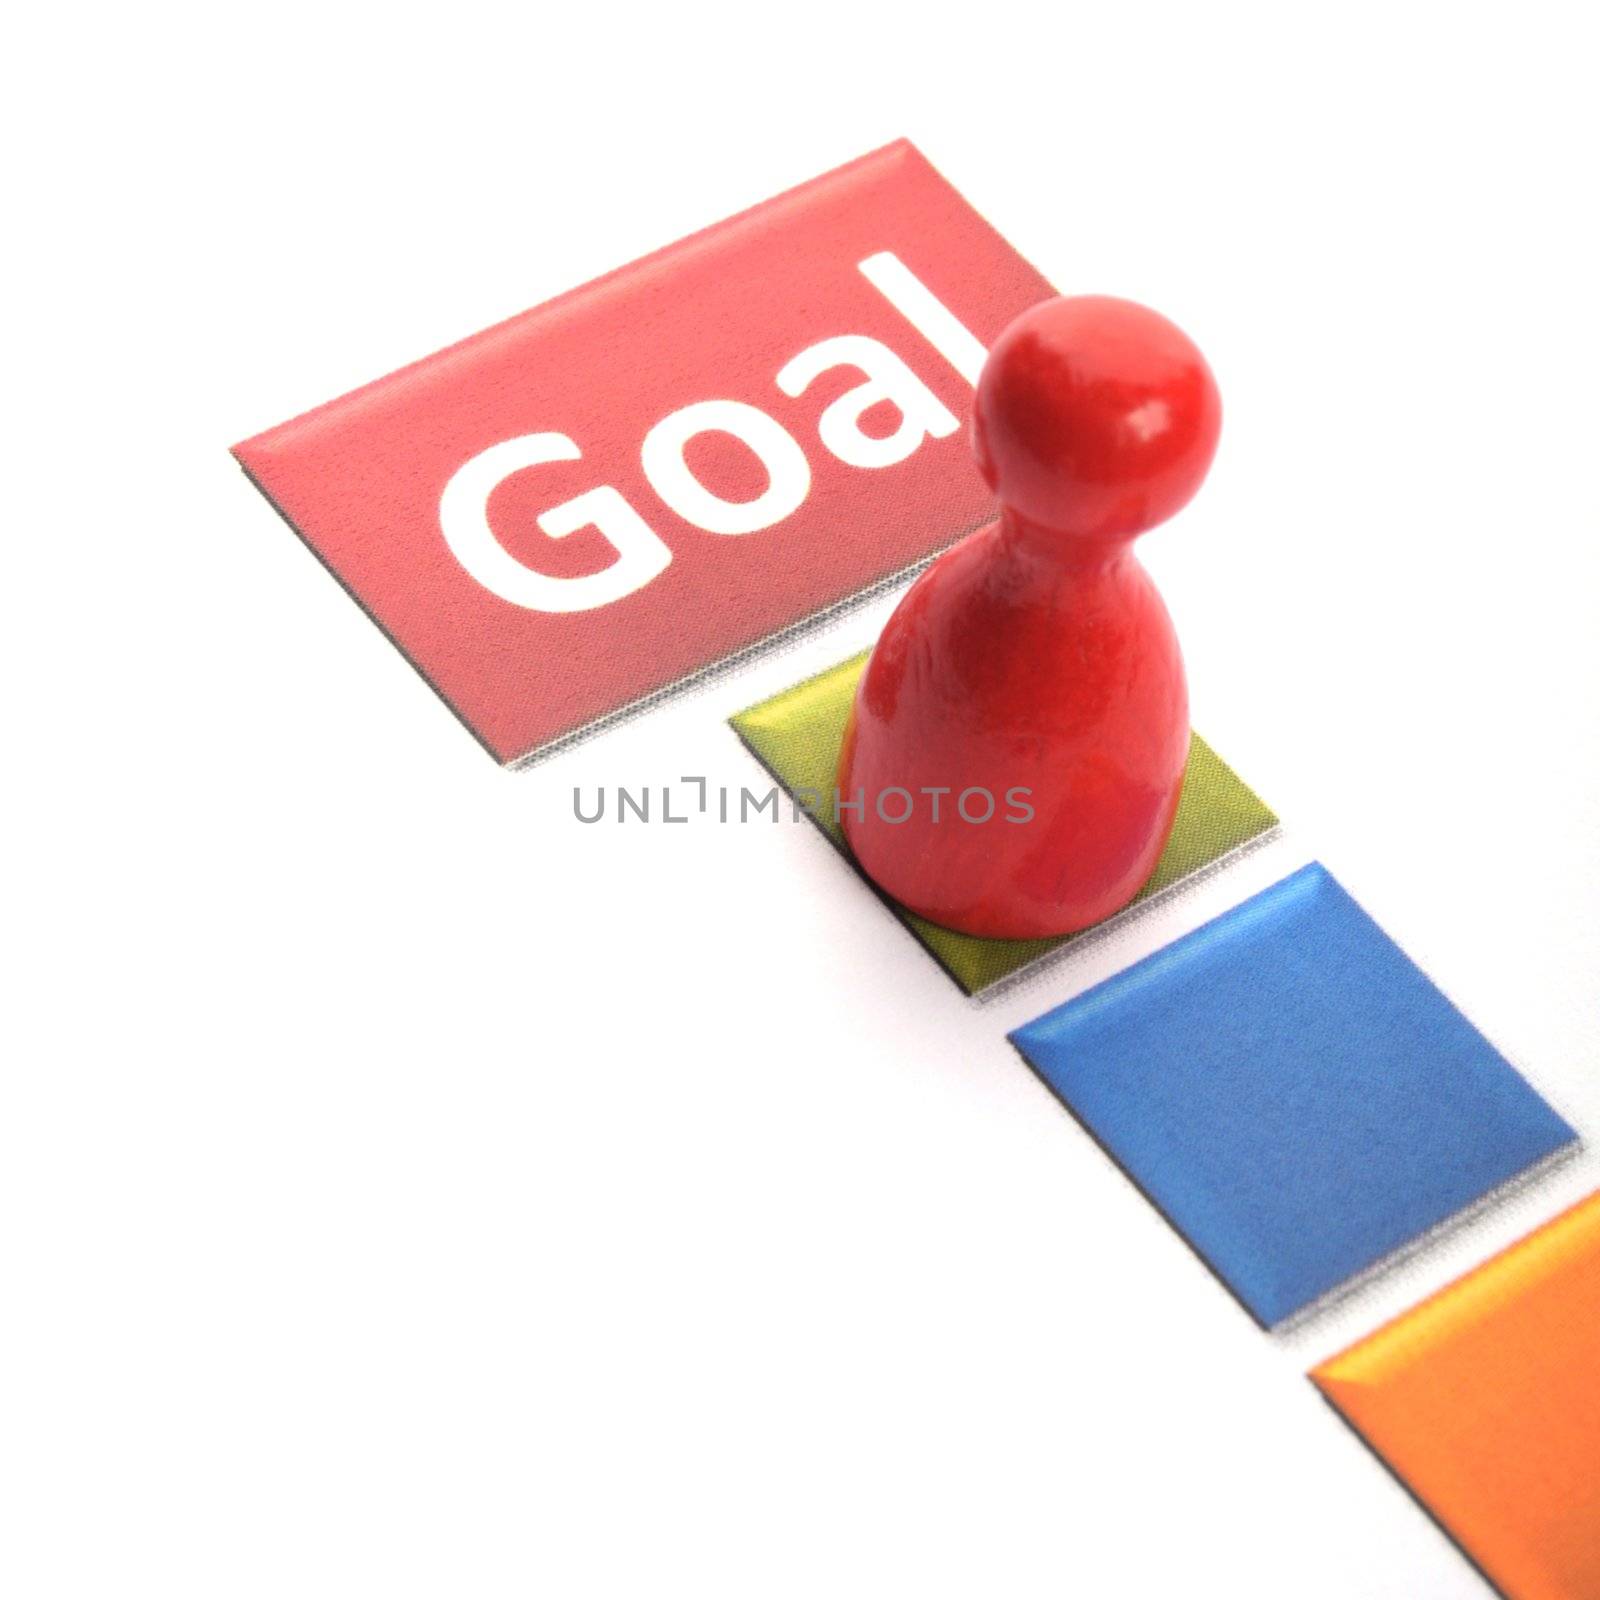 goal by gunnar3000